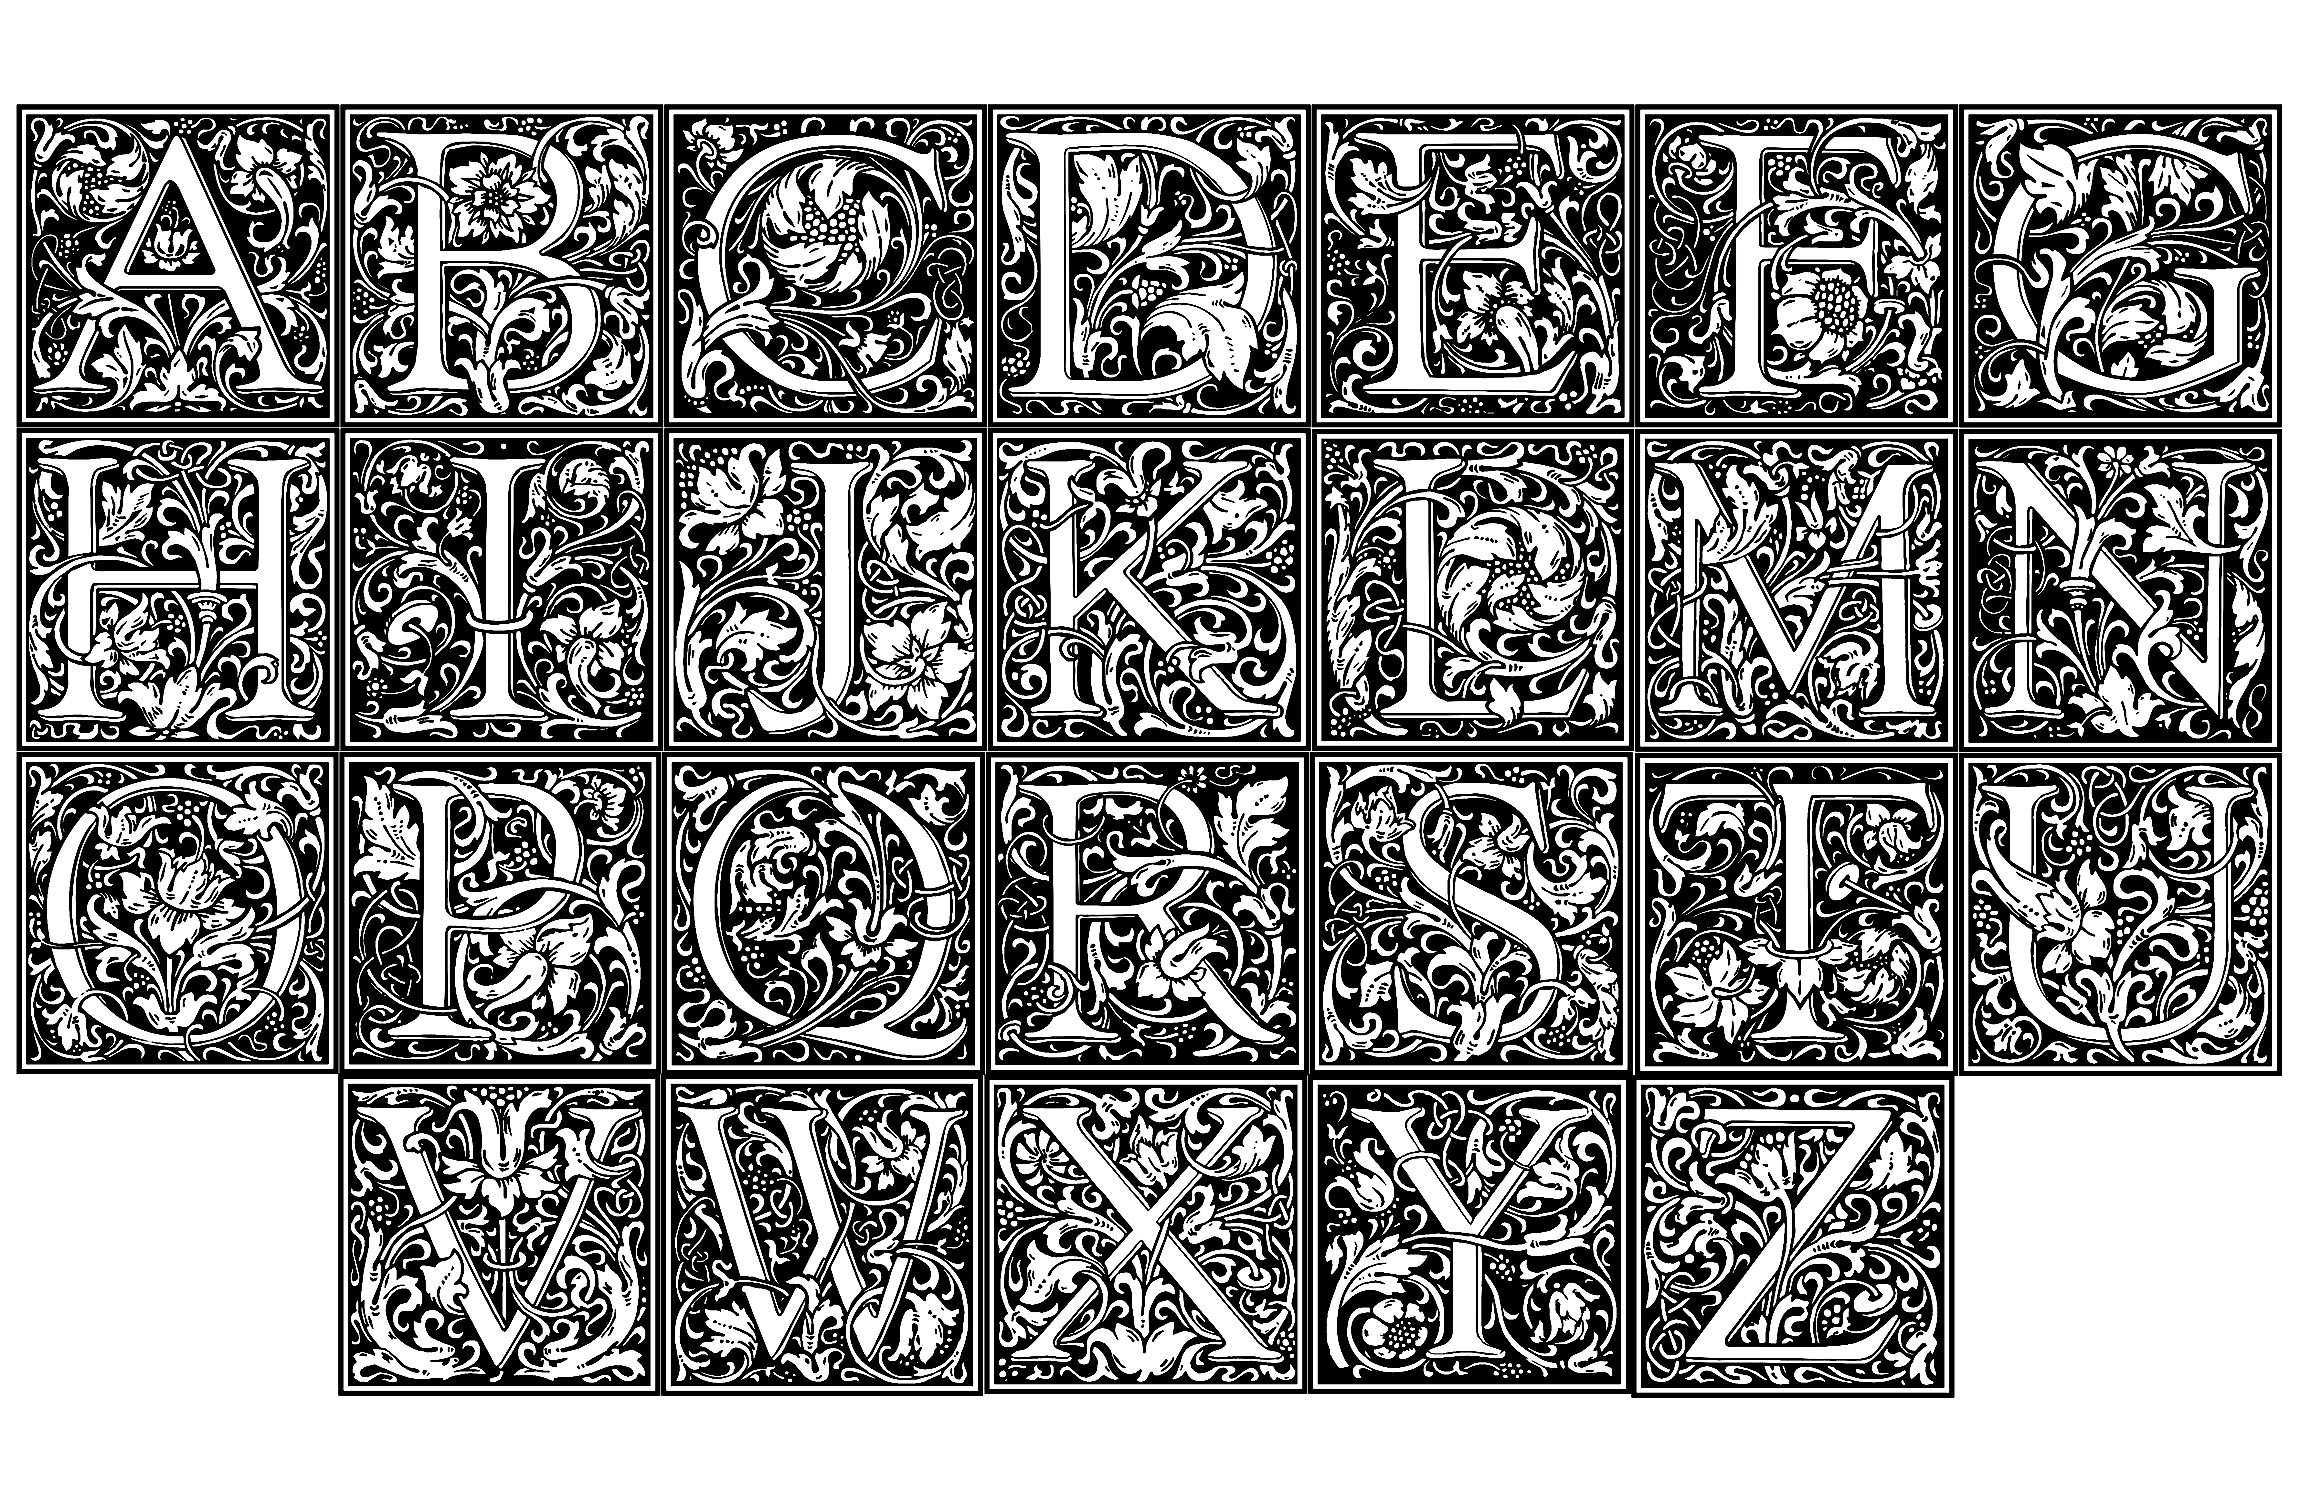 Un intero alfabeto da colorare, creato a partire dalle illustrazioni dell'artista inglese William Morris (1834 - 1896). Ogni lettera dell'alfabeto è impreziosita dalla tipica Arte